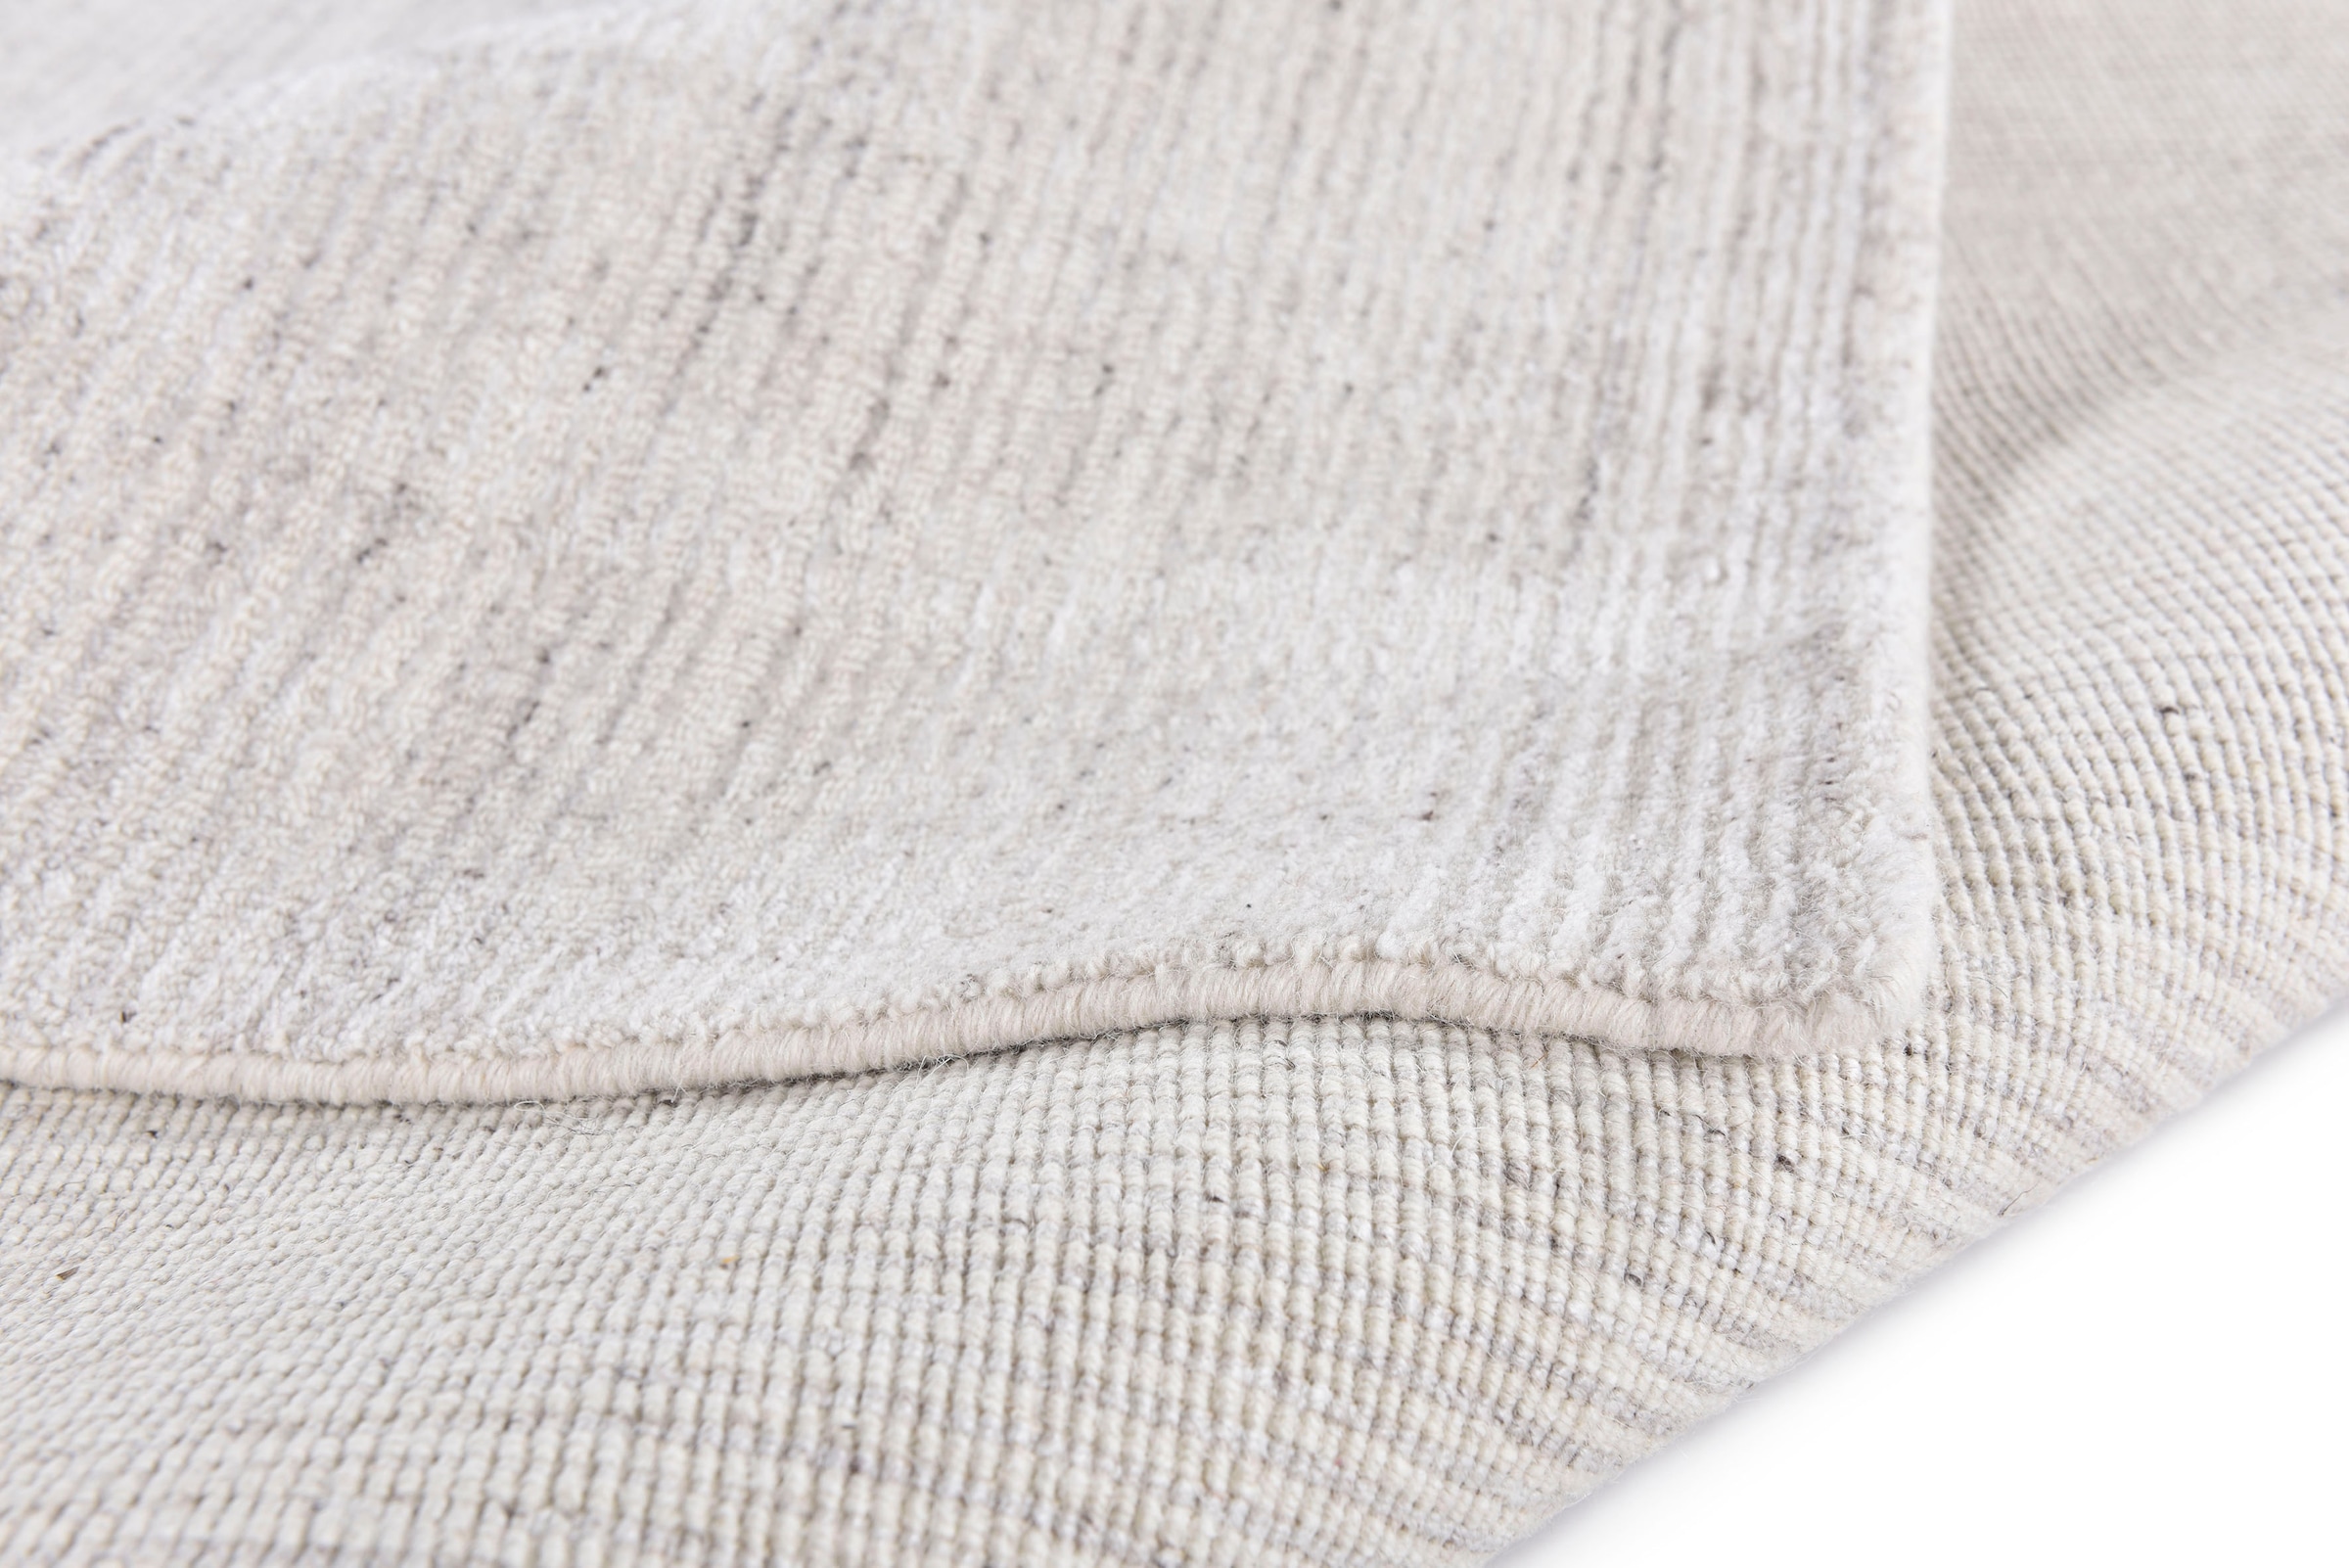 Sansibar Teppich »Tinnum Uni meliert«, rechteckig, meliert, 60% Wolle, handgearbeitet in aufwendiger Handloom-Technik